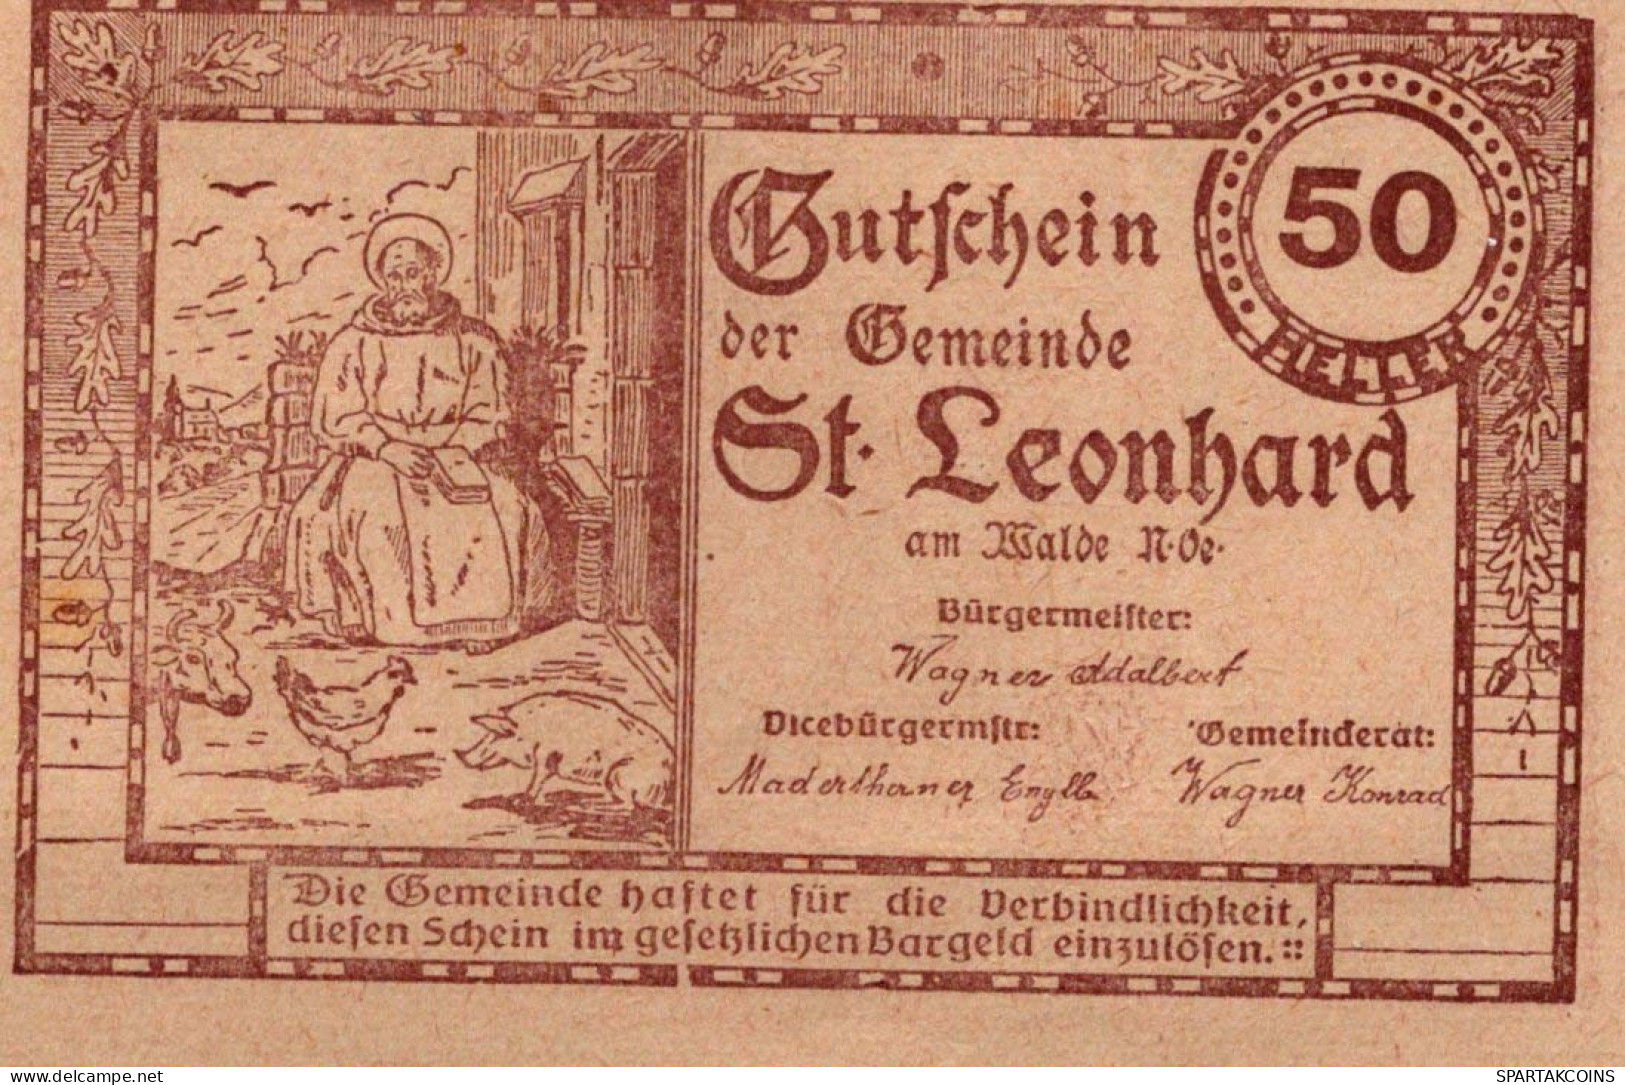 50 HELLER 1920 Stadt SANKT LEONHARD AM WALDE Niedrigeren Österreich Notgeld Papiergeld Banknote #PG940 - [11] Emissions Locales